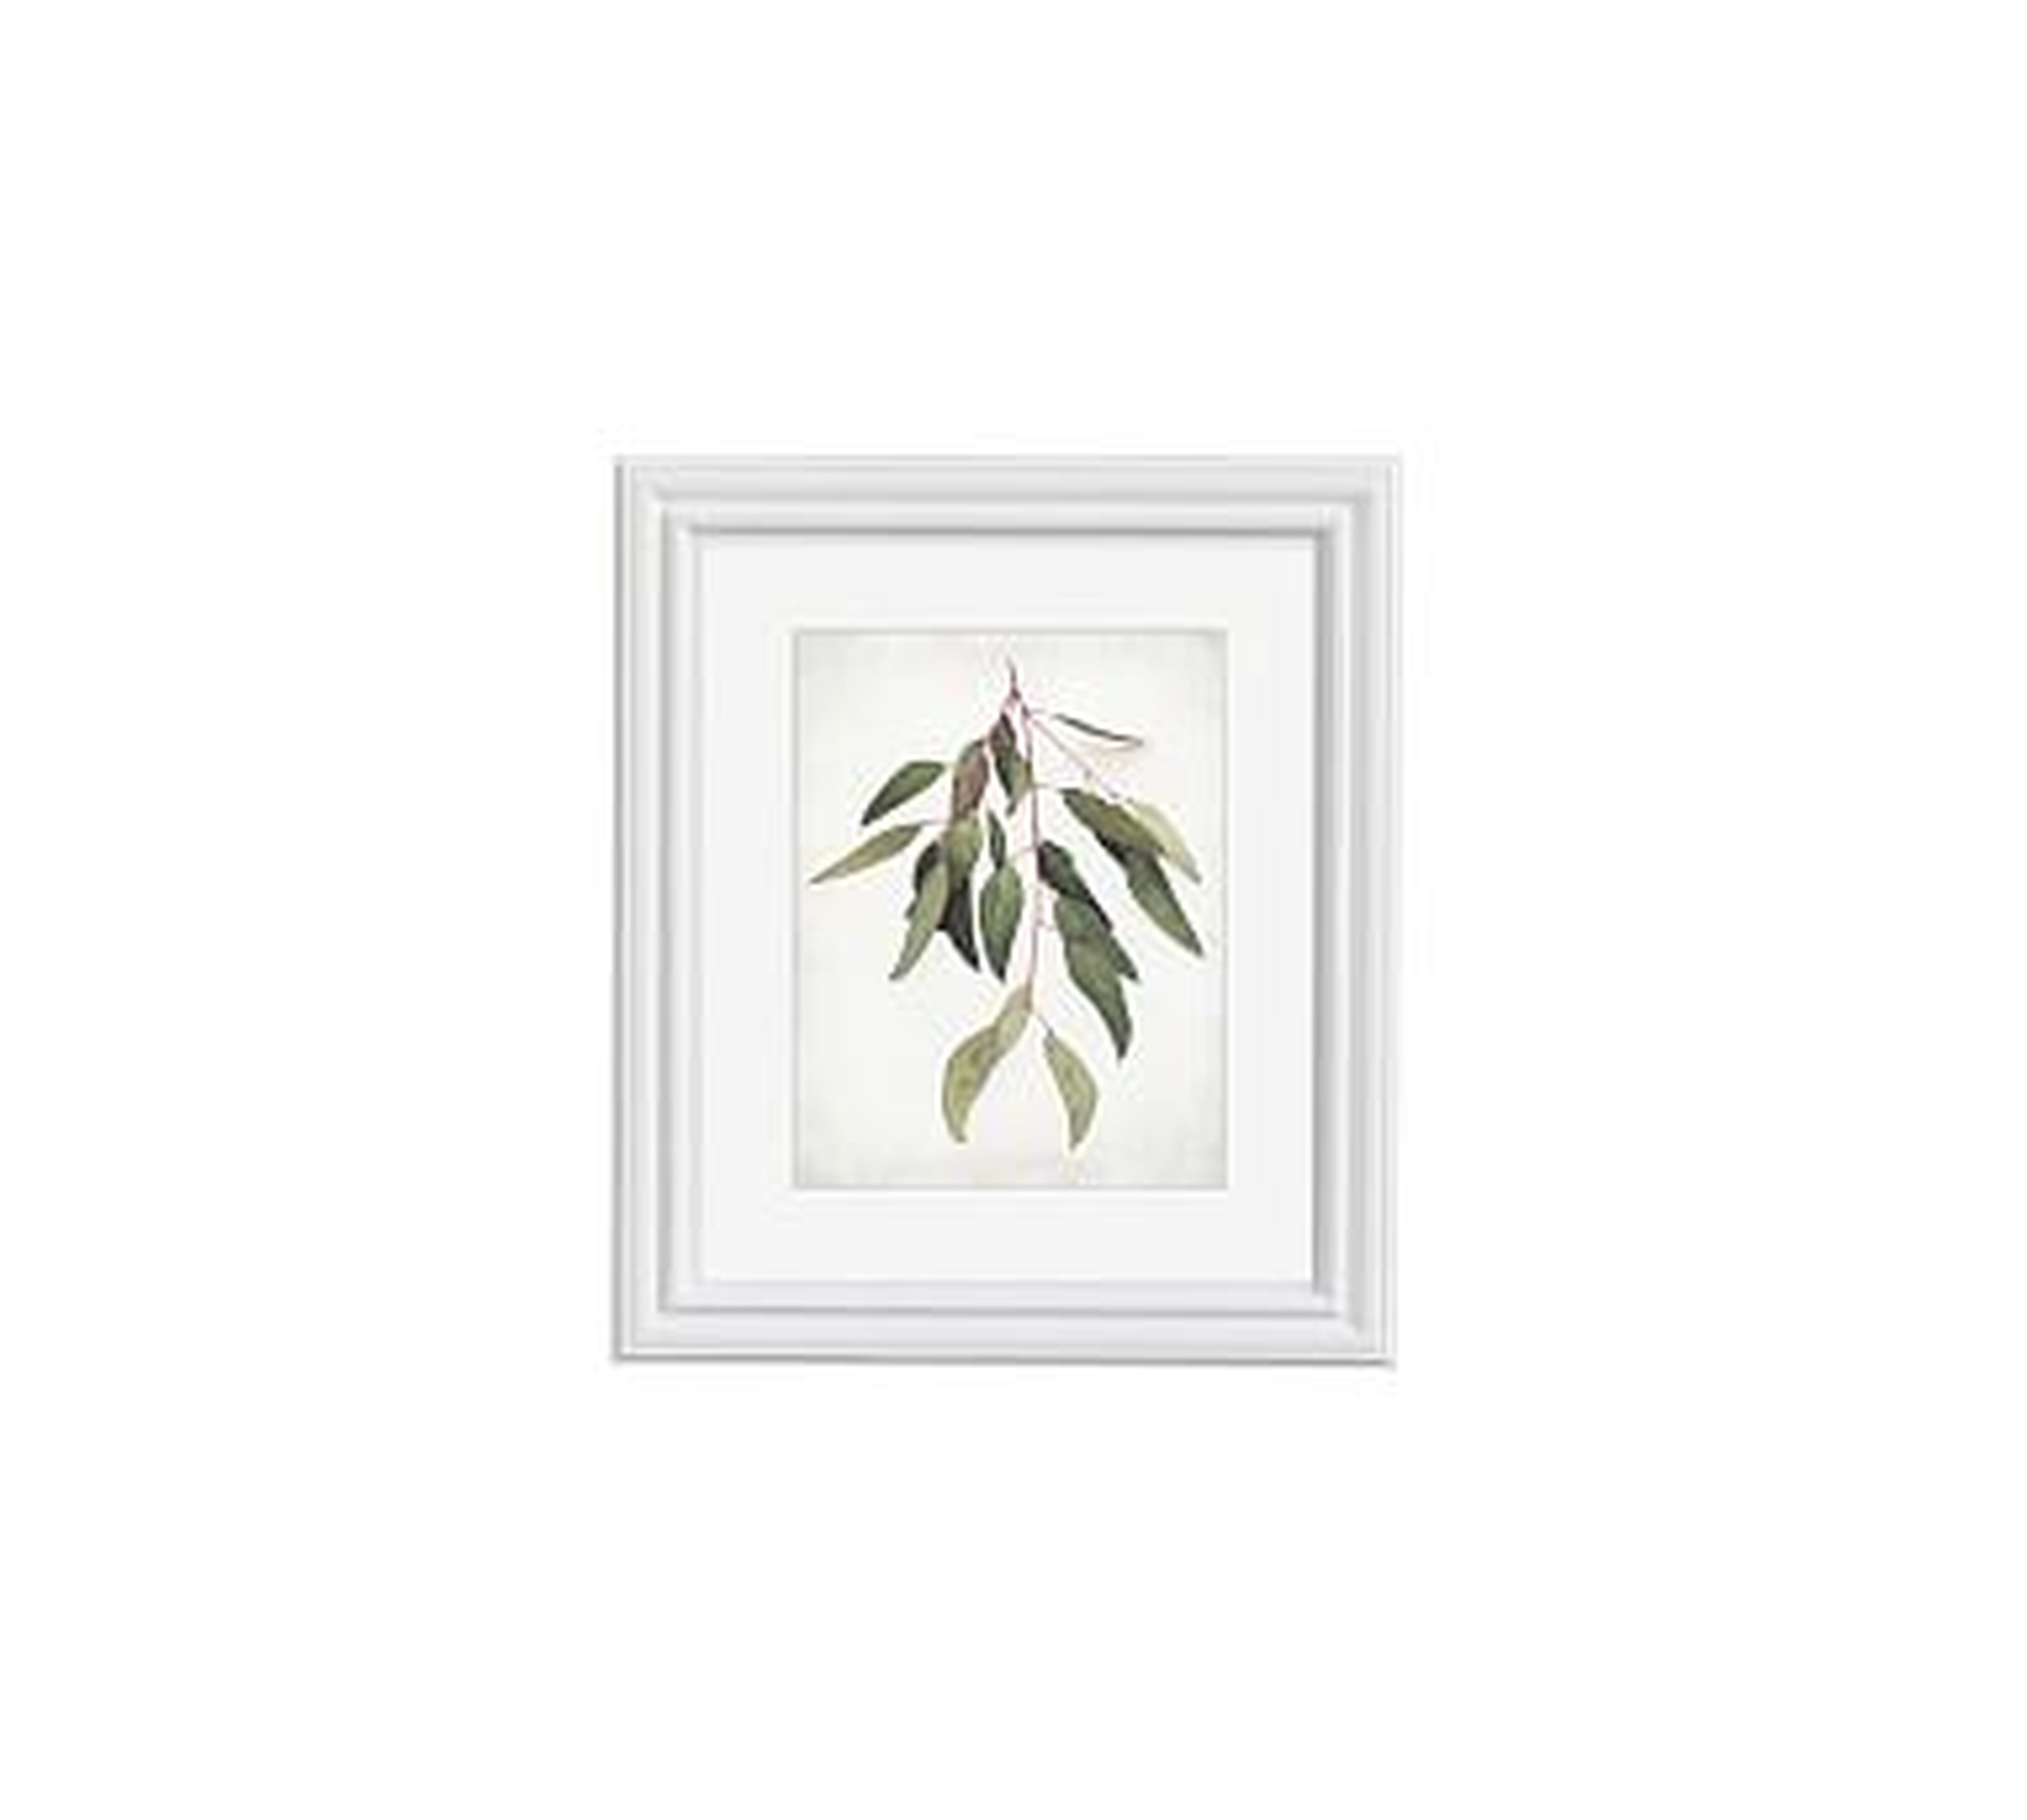 Eucalyptus Sprig Framed Print by Lupen Grainne, 13x11", Ridged Distressed Frame, White, Mat - Pottery Barn